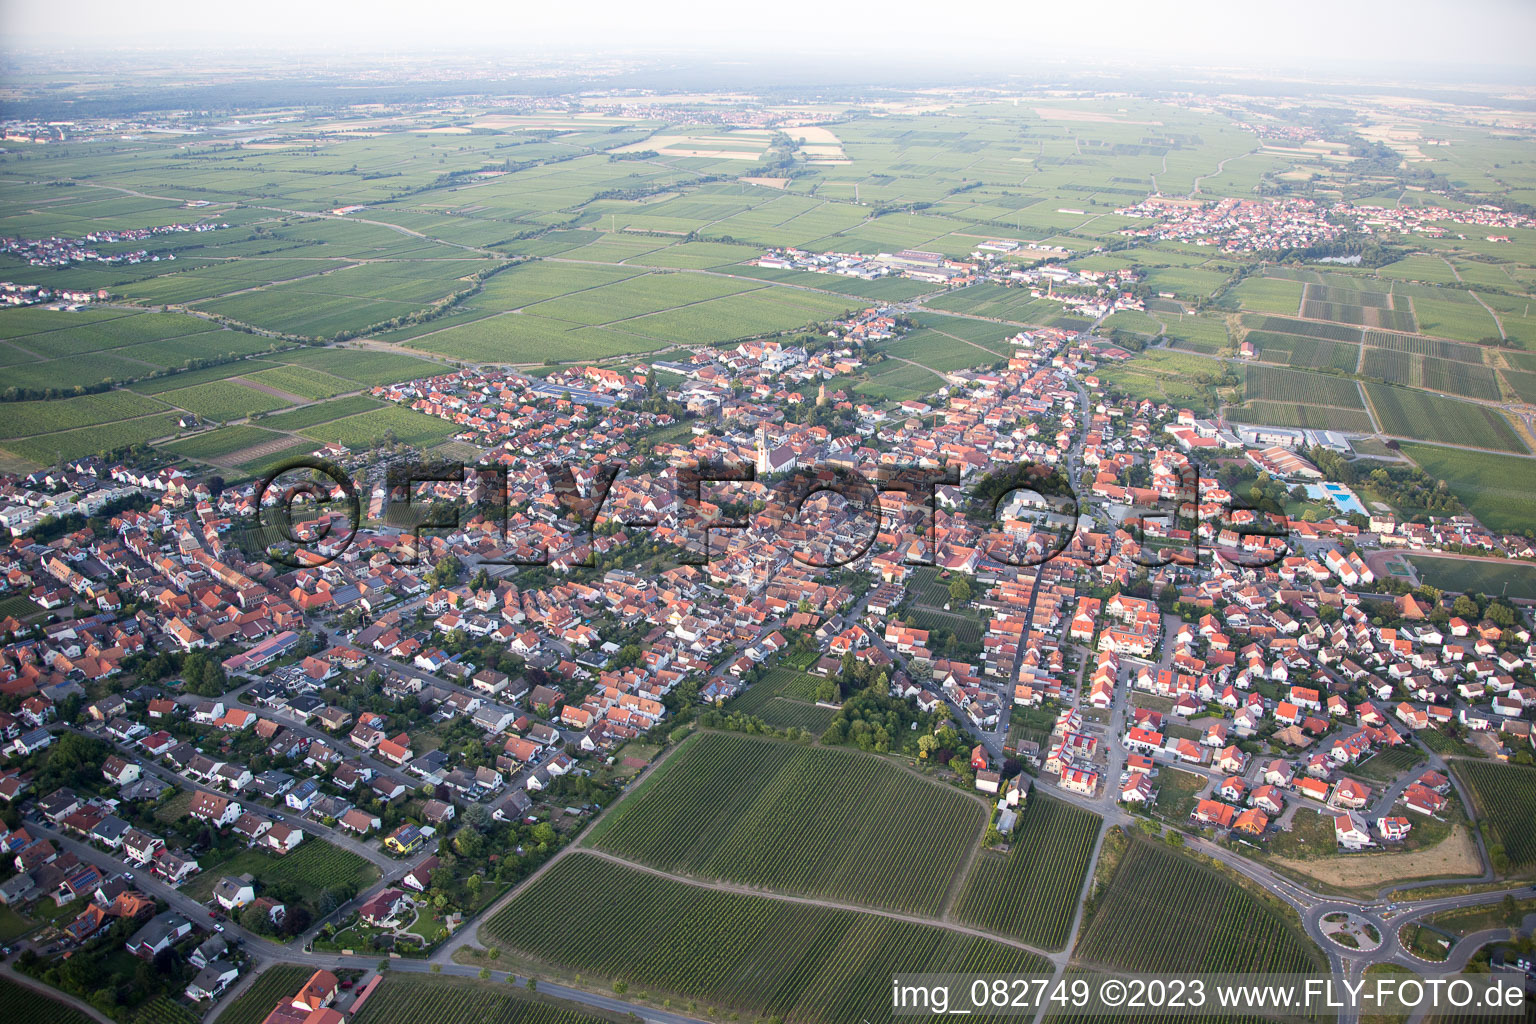 Vue aérienne de De l'ouest à Maikammer dans le département Rhénanie-Palatinat, Allemagne